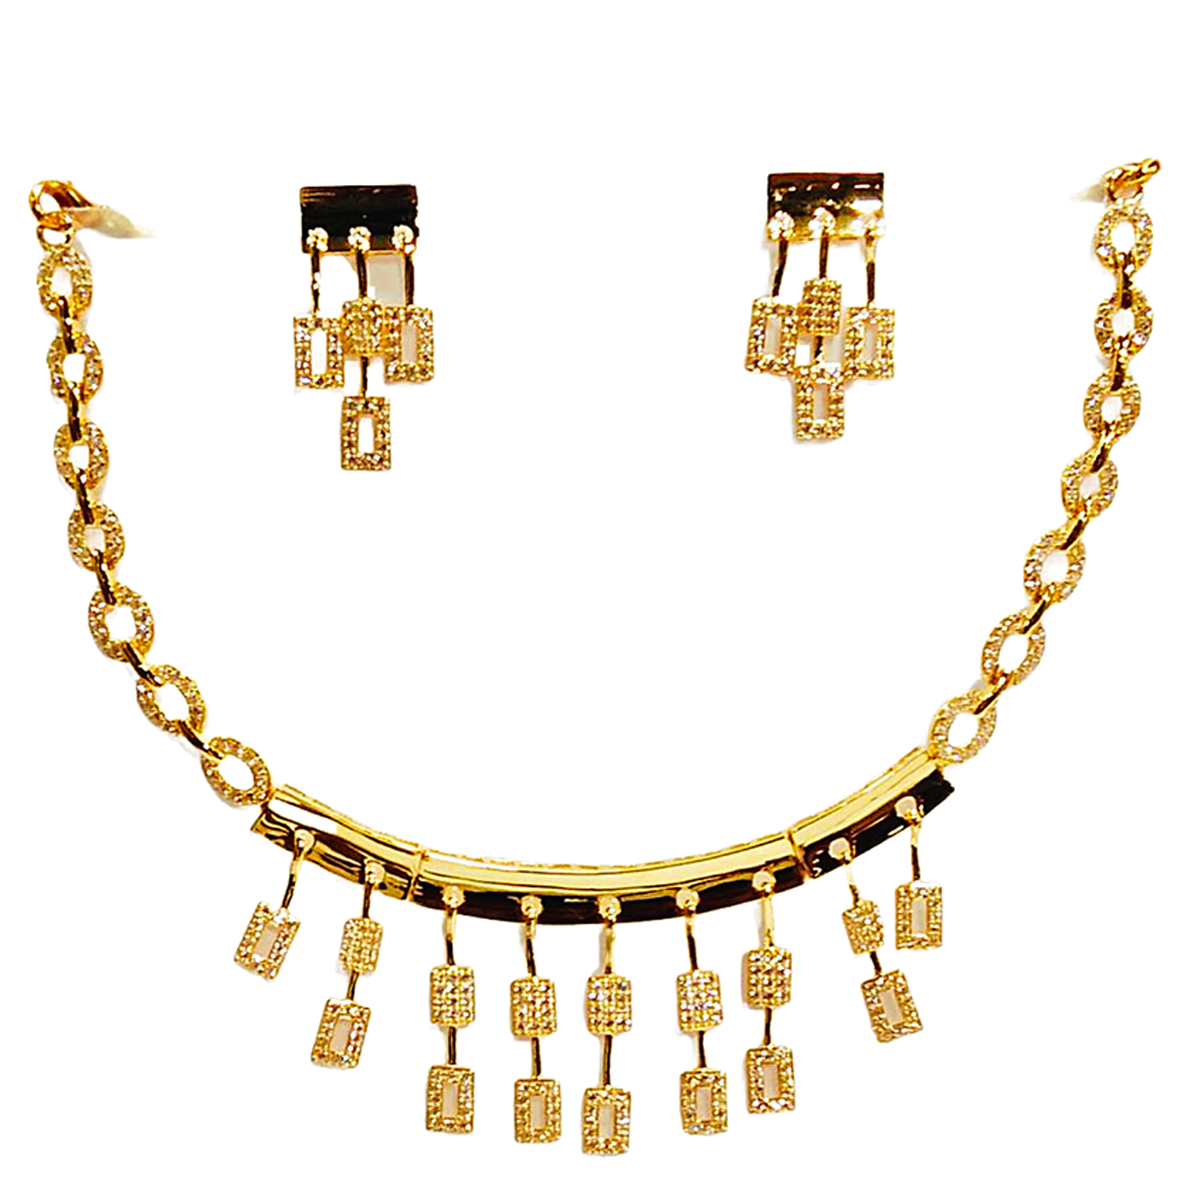 Bhabani gold necklace